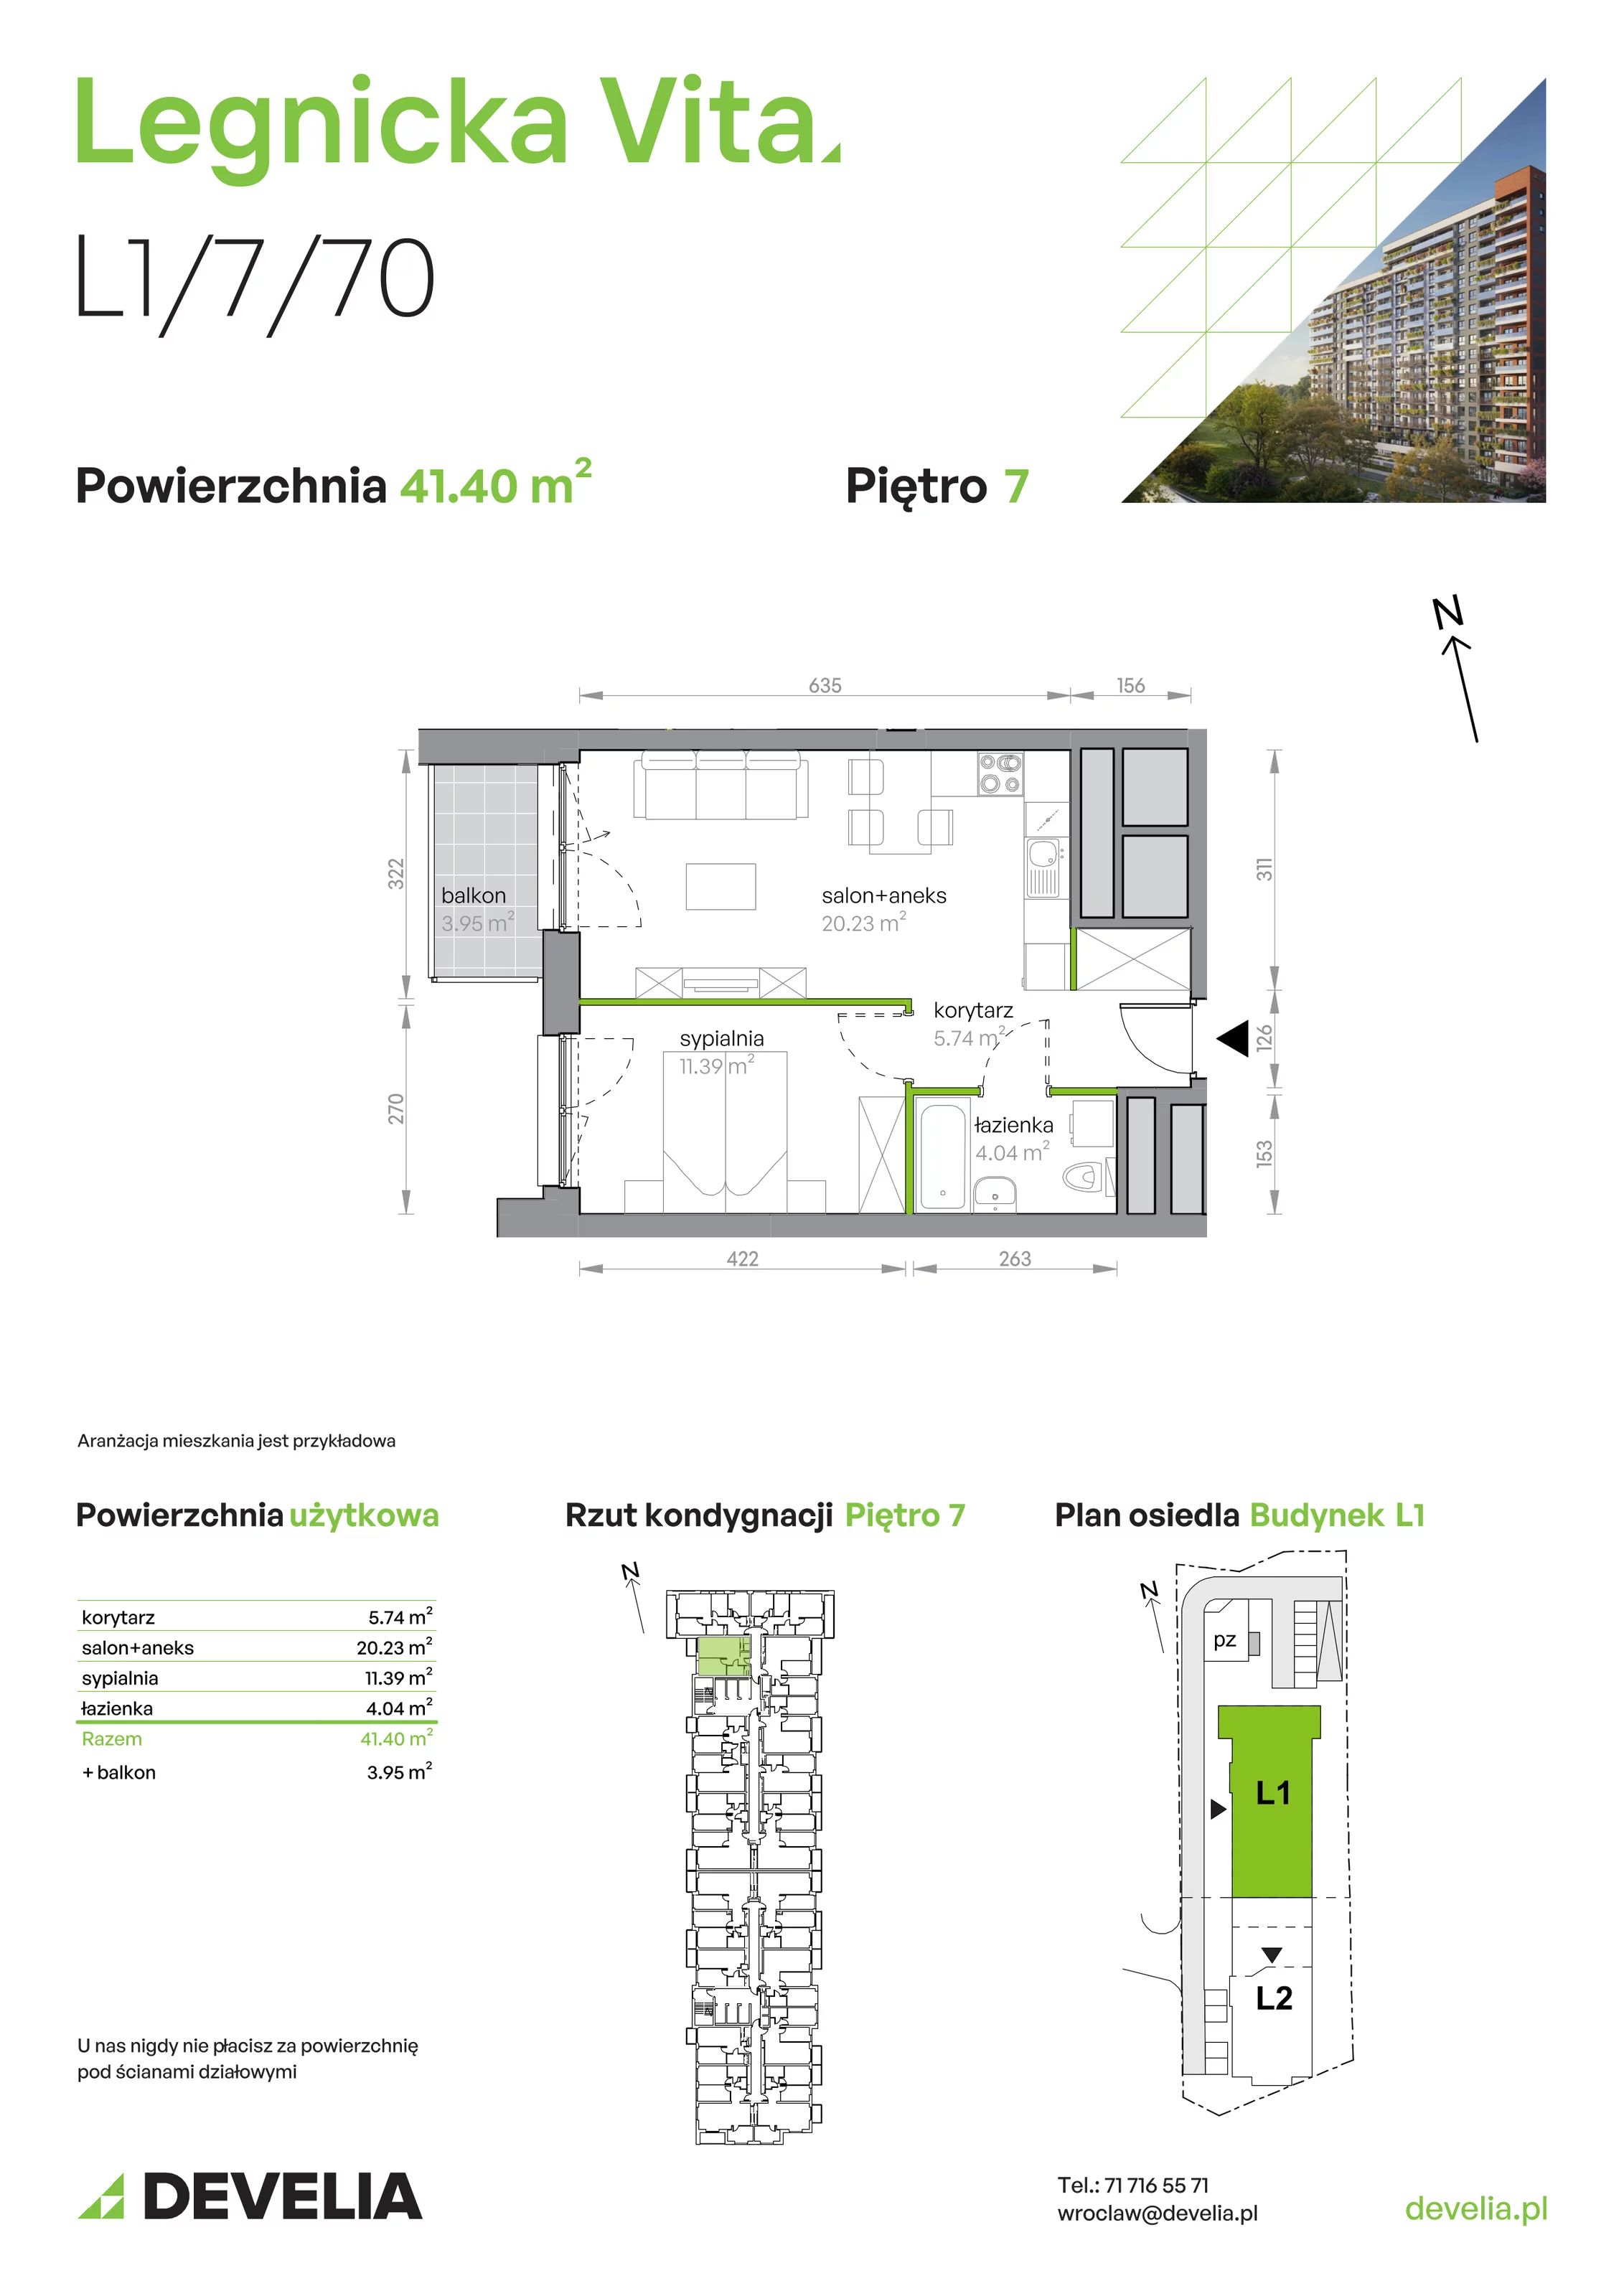 Mieszkanie 41,40 m², piętro 7, oferta nr L1/7/70, Legnicka Vita, Wrocław, Gądów-Popowice Południowe, Popowice, ul. Legnicka 52 A